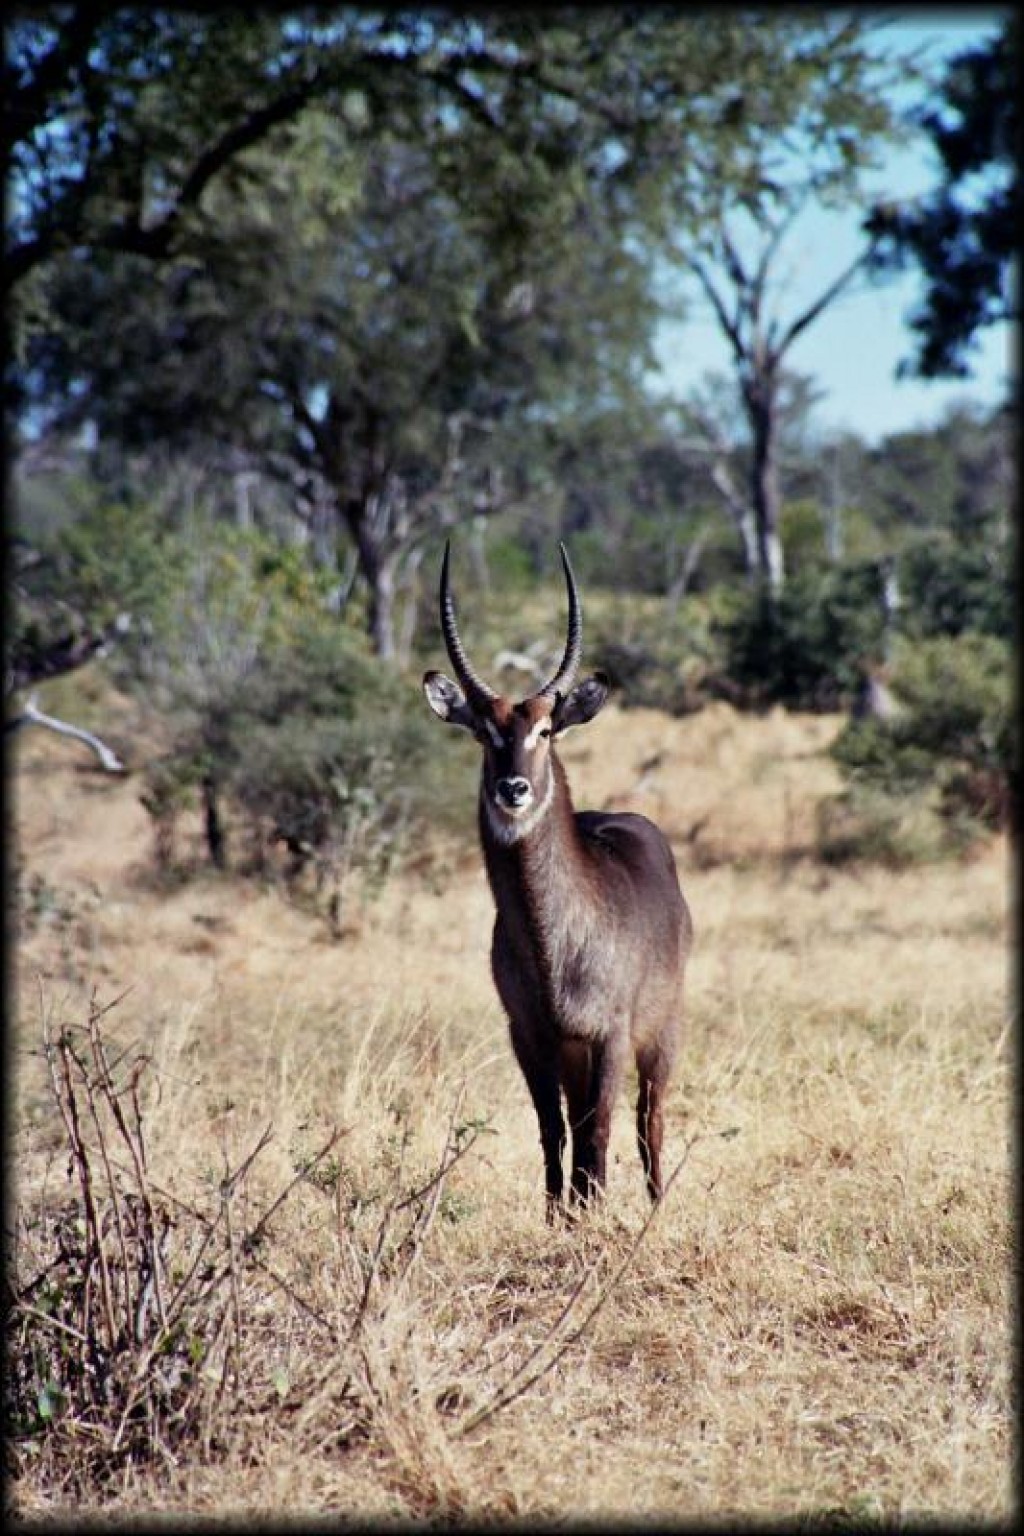 Sable antelope.